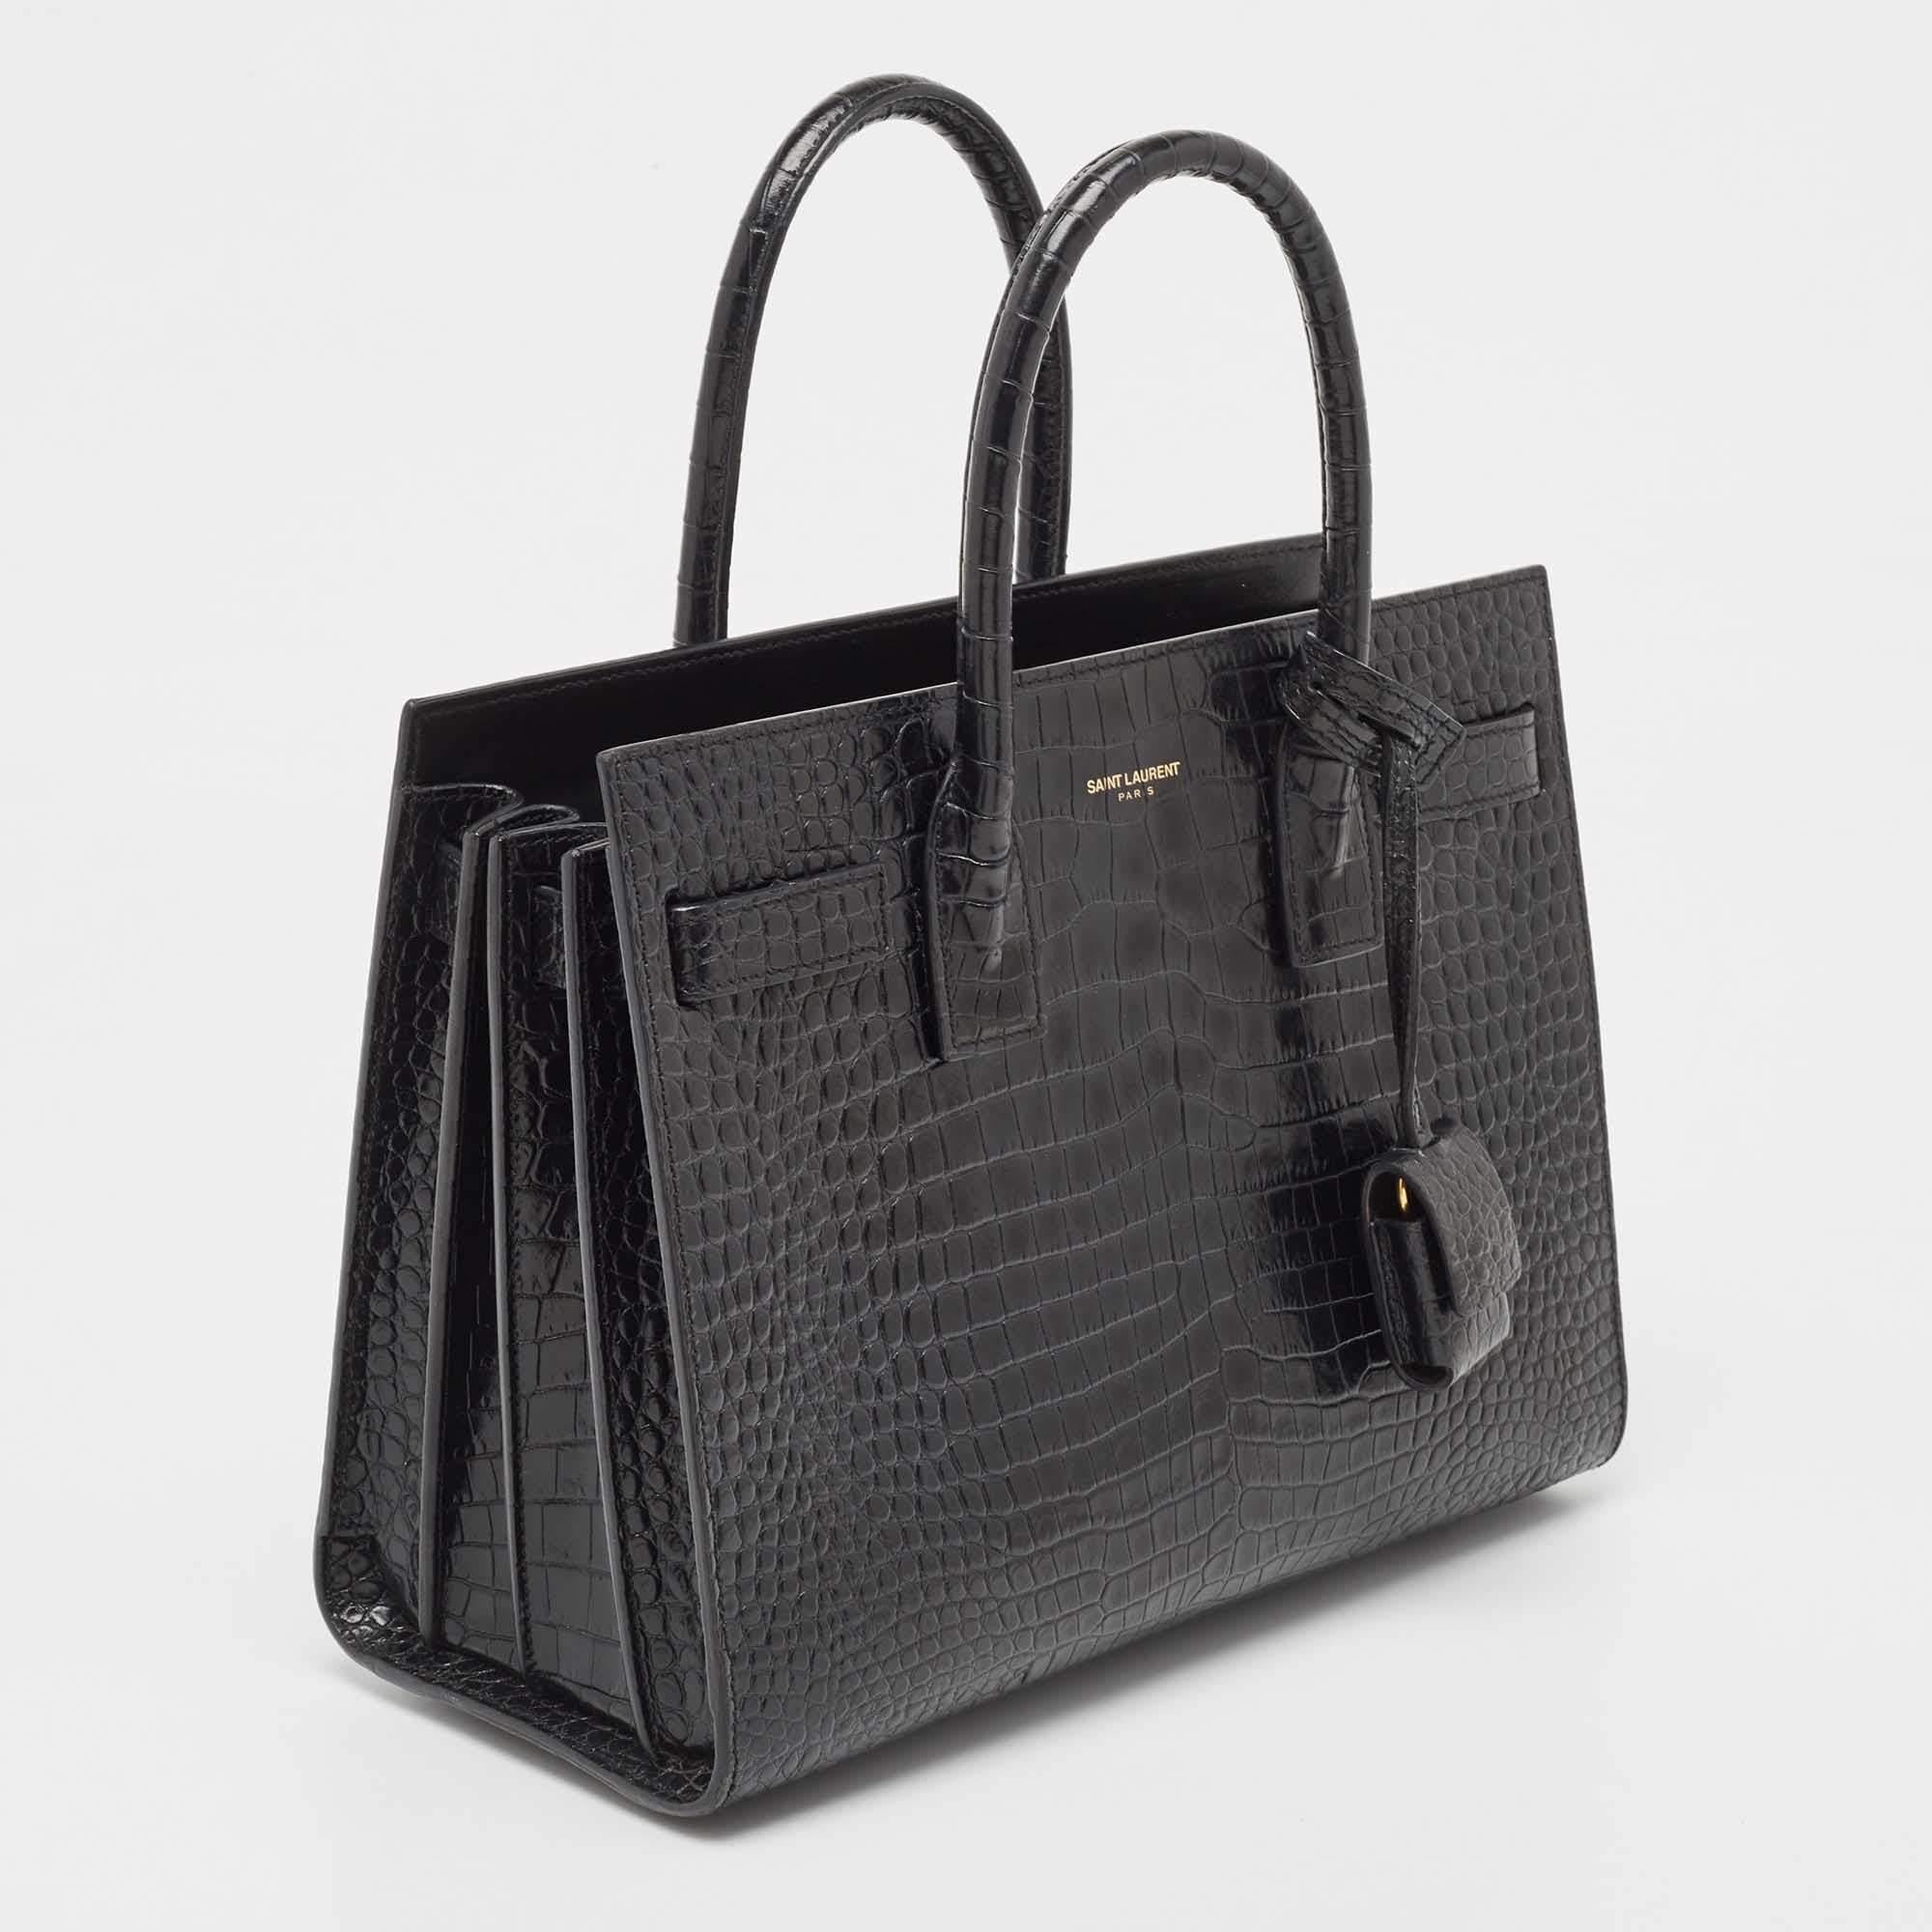 Ce sac à main Sac de Jour de Saint Laurent a une structure qui est tout simplement synonyme de sophistication. Confectionné en cuir noir gaufré au crocodile, ce sac est maintenu par deux anses supérieures. Le fourre-tout est doté d'un intérieur